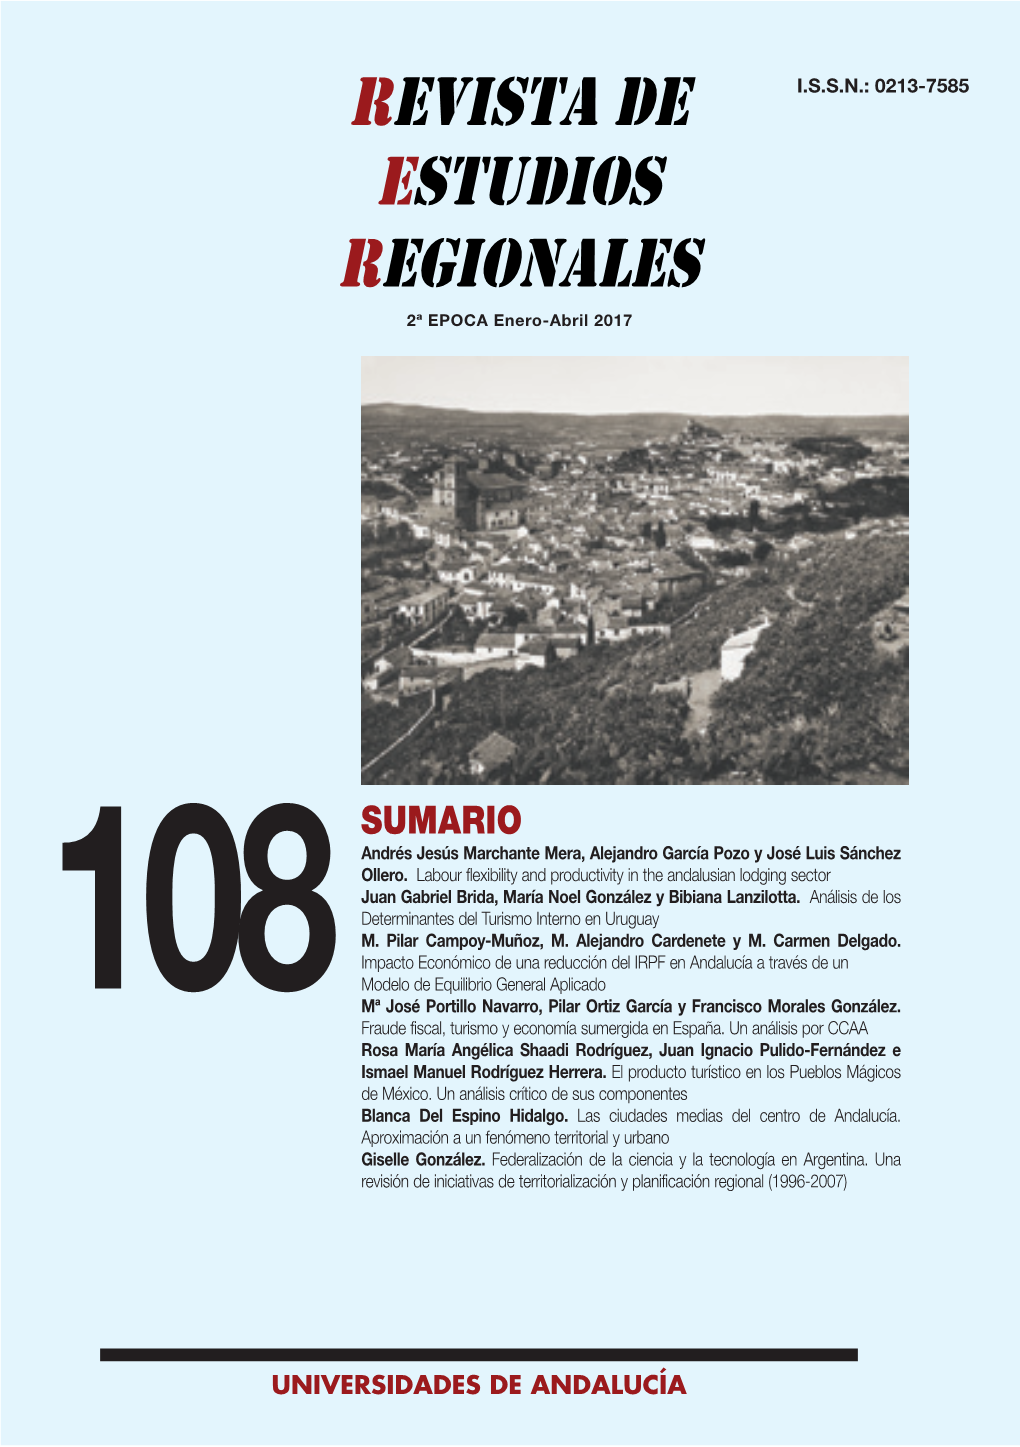 Universidades De Andalucía Revista De Estudios Regionales Nº 108, I.S.S.N.: 0213-7585 (2017), Pp